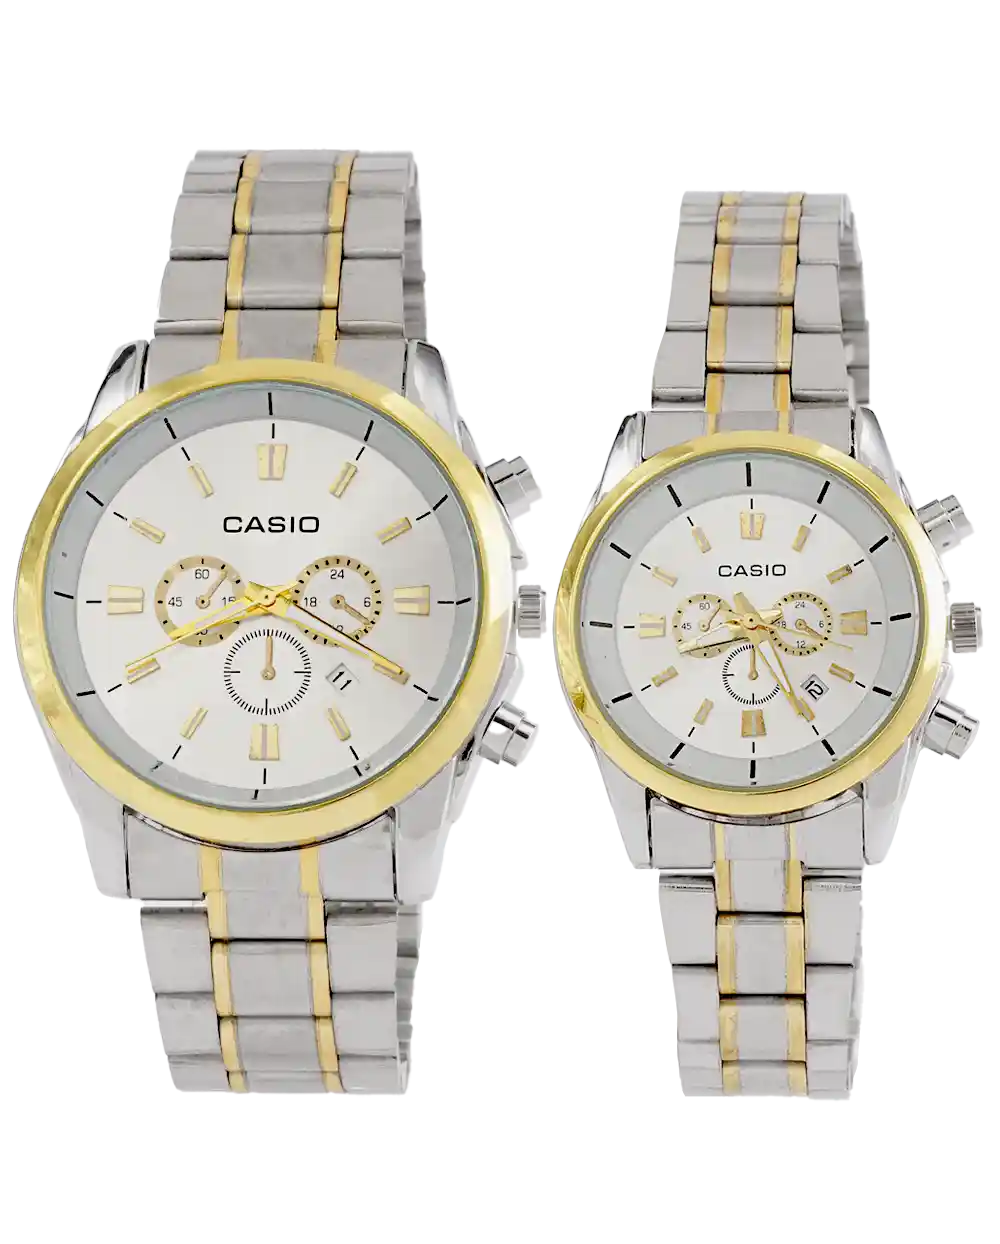 خرید ست ساعت مچی کاسیو CASIO مدل 1920 بند استیل رنگ نقره ای طلایی و صفحه ی سفید رنگ ثابت قیمت 750 هزارتومان به همراه ارسال رایگان و جعبه